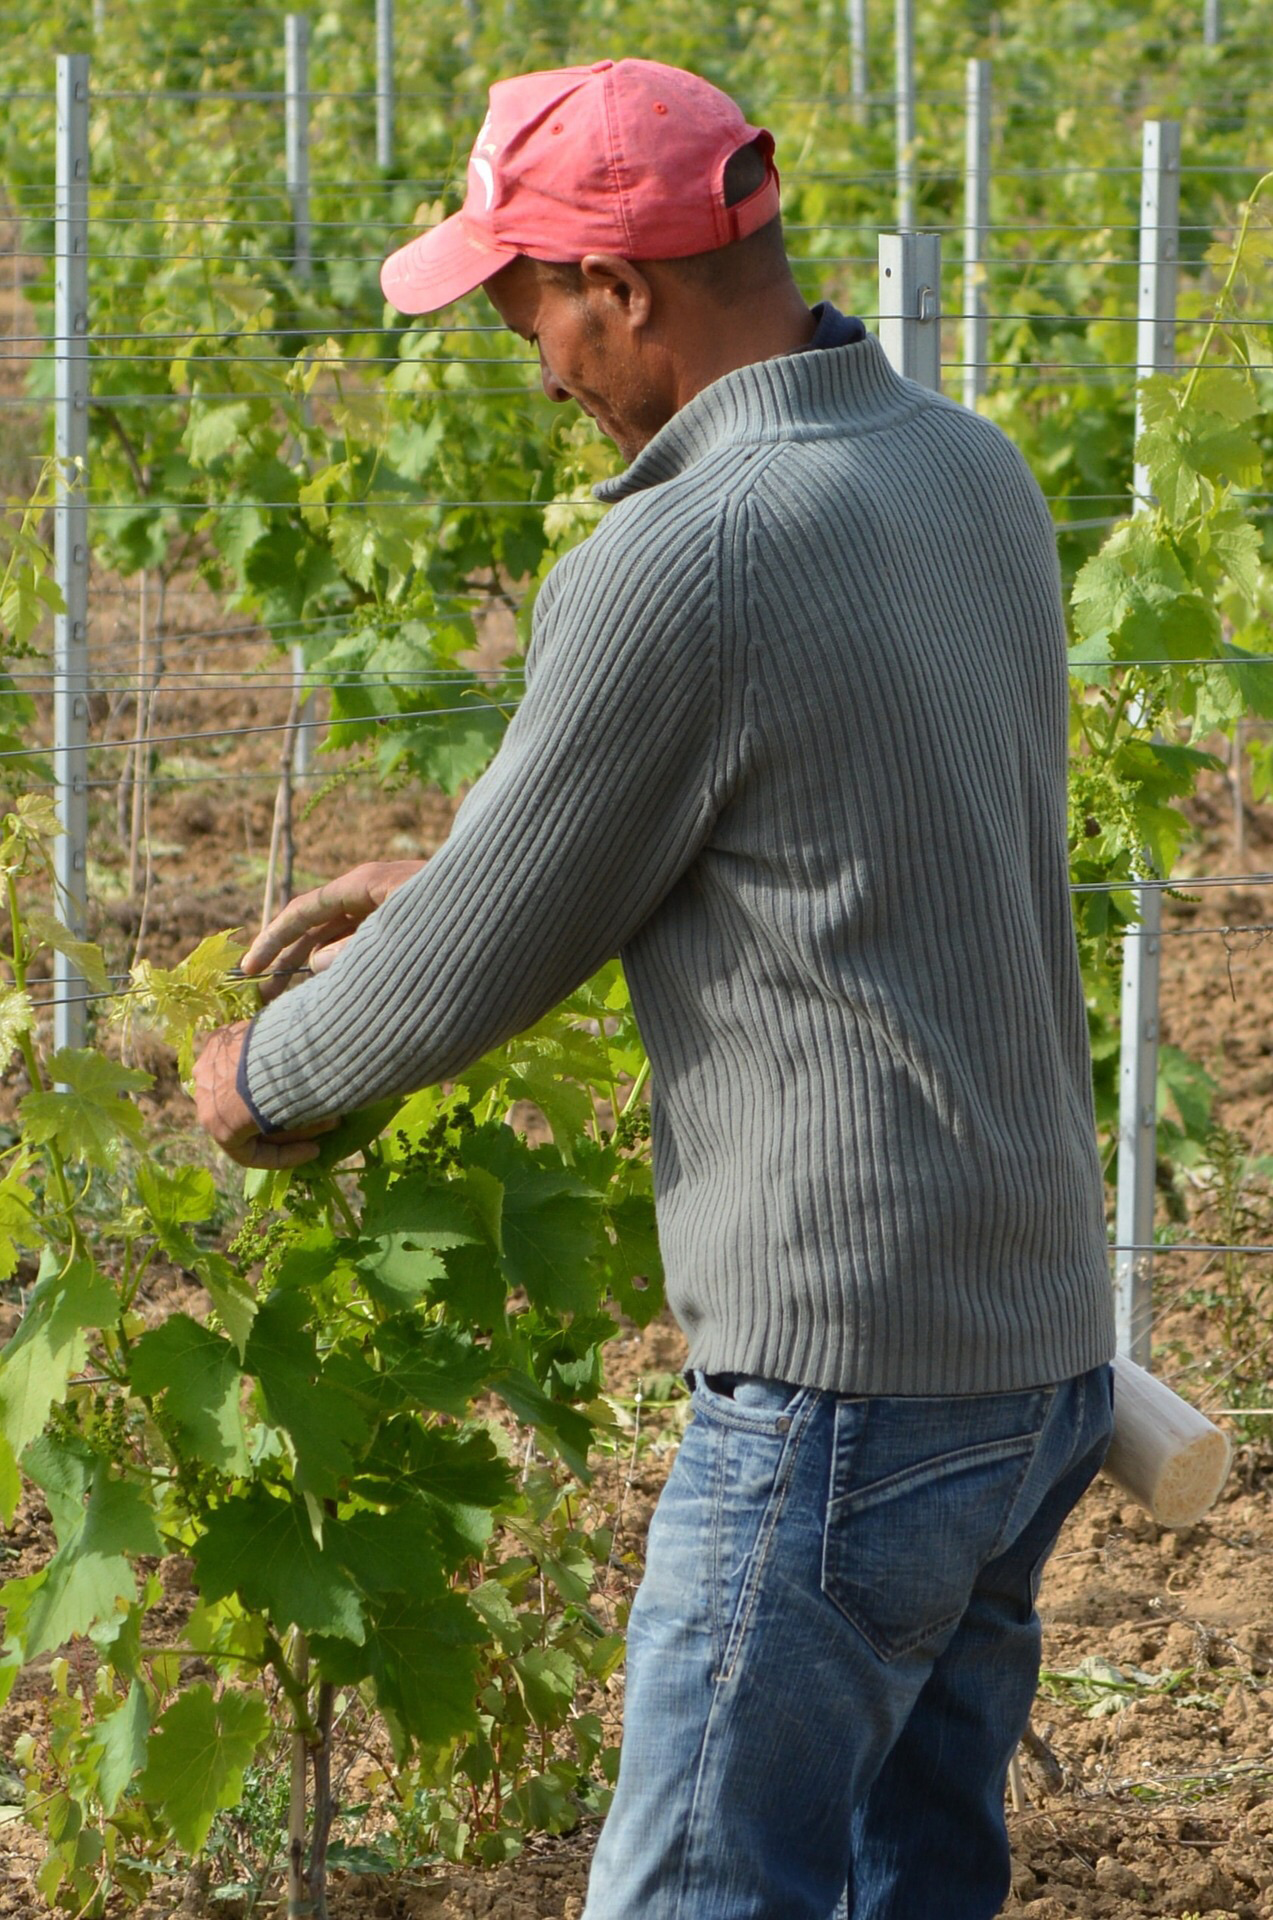 Der Klassiker: Wander- bzw. Saisonarbeiter lesen Wein, pflücken Obst oder stechen Spargel. (c) www.pixabay.com